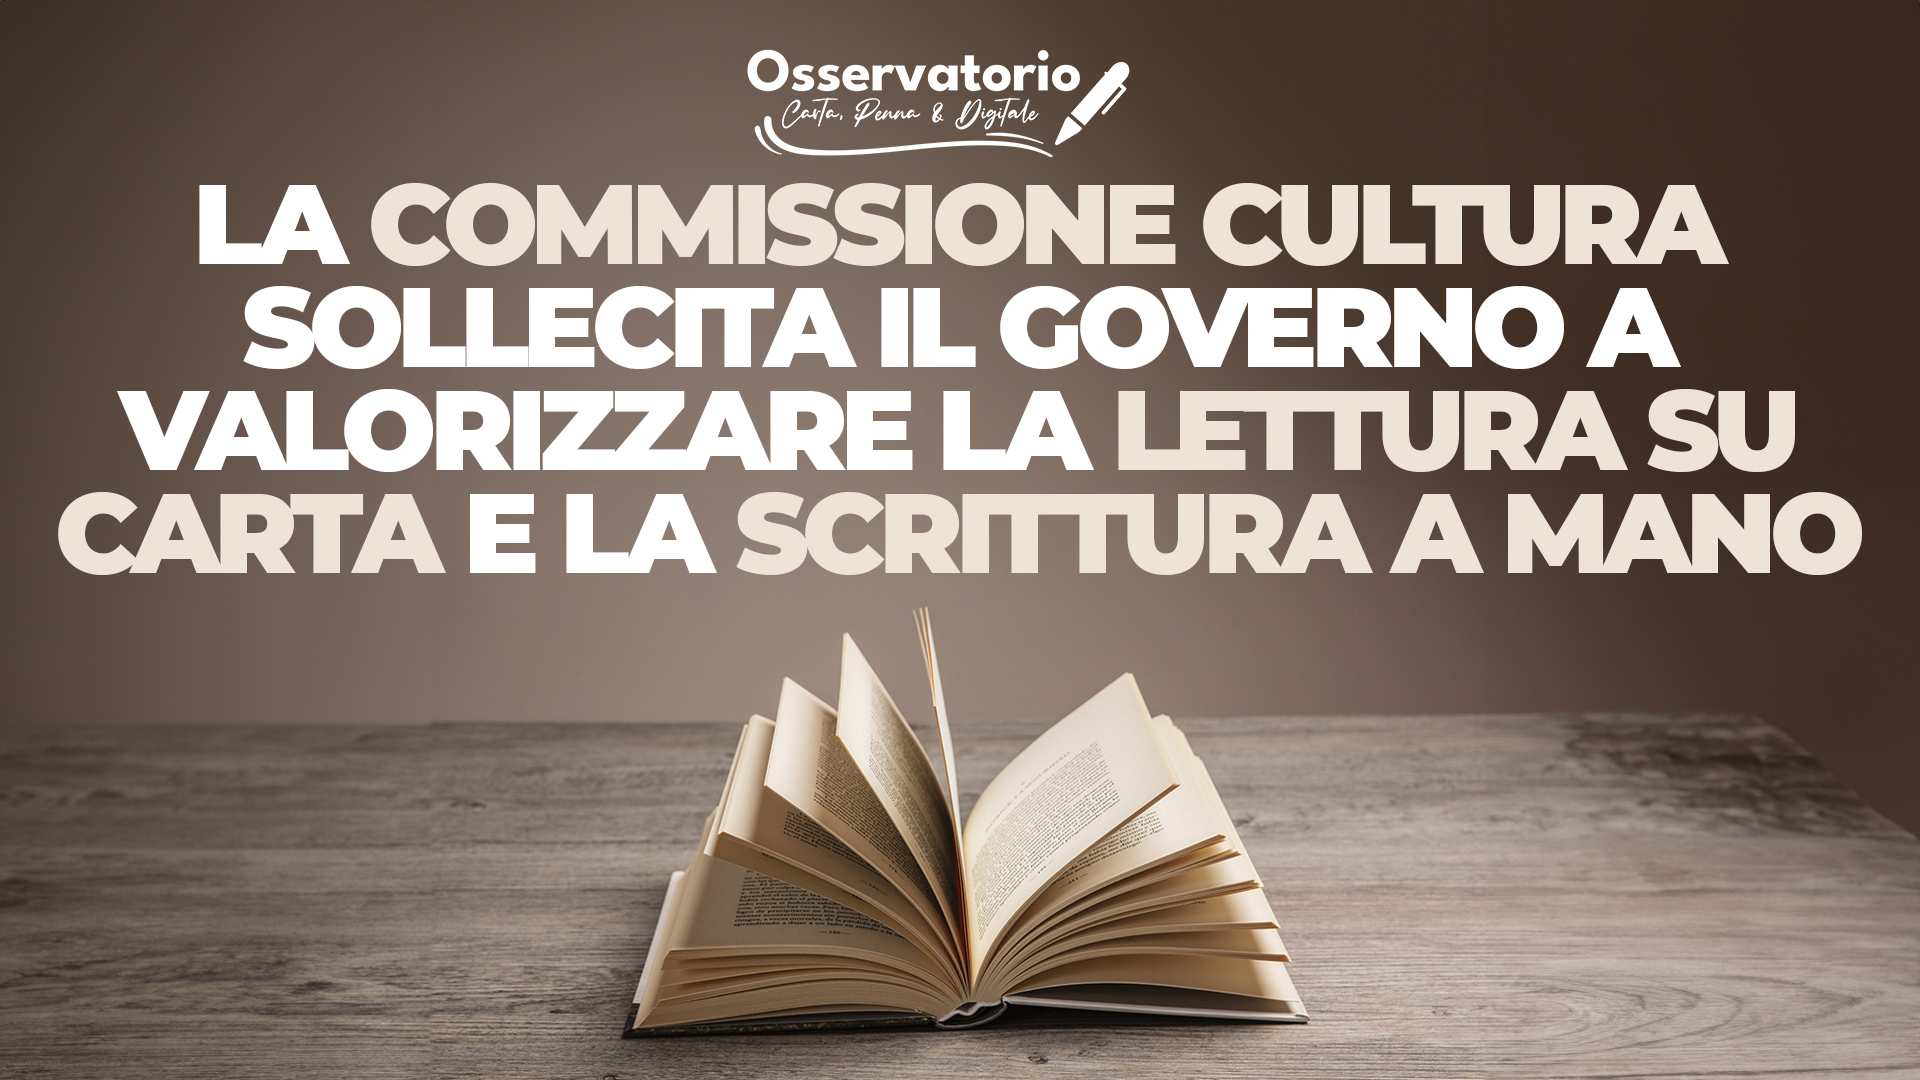 La Commissione cultura sollecita il Governo a valorizzare lettura su carta e scrittura a mano